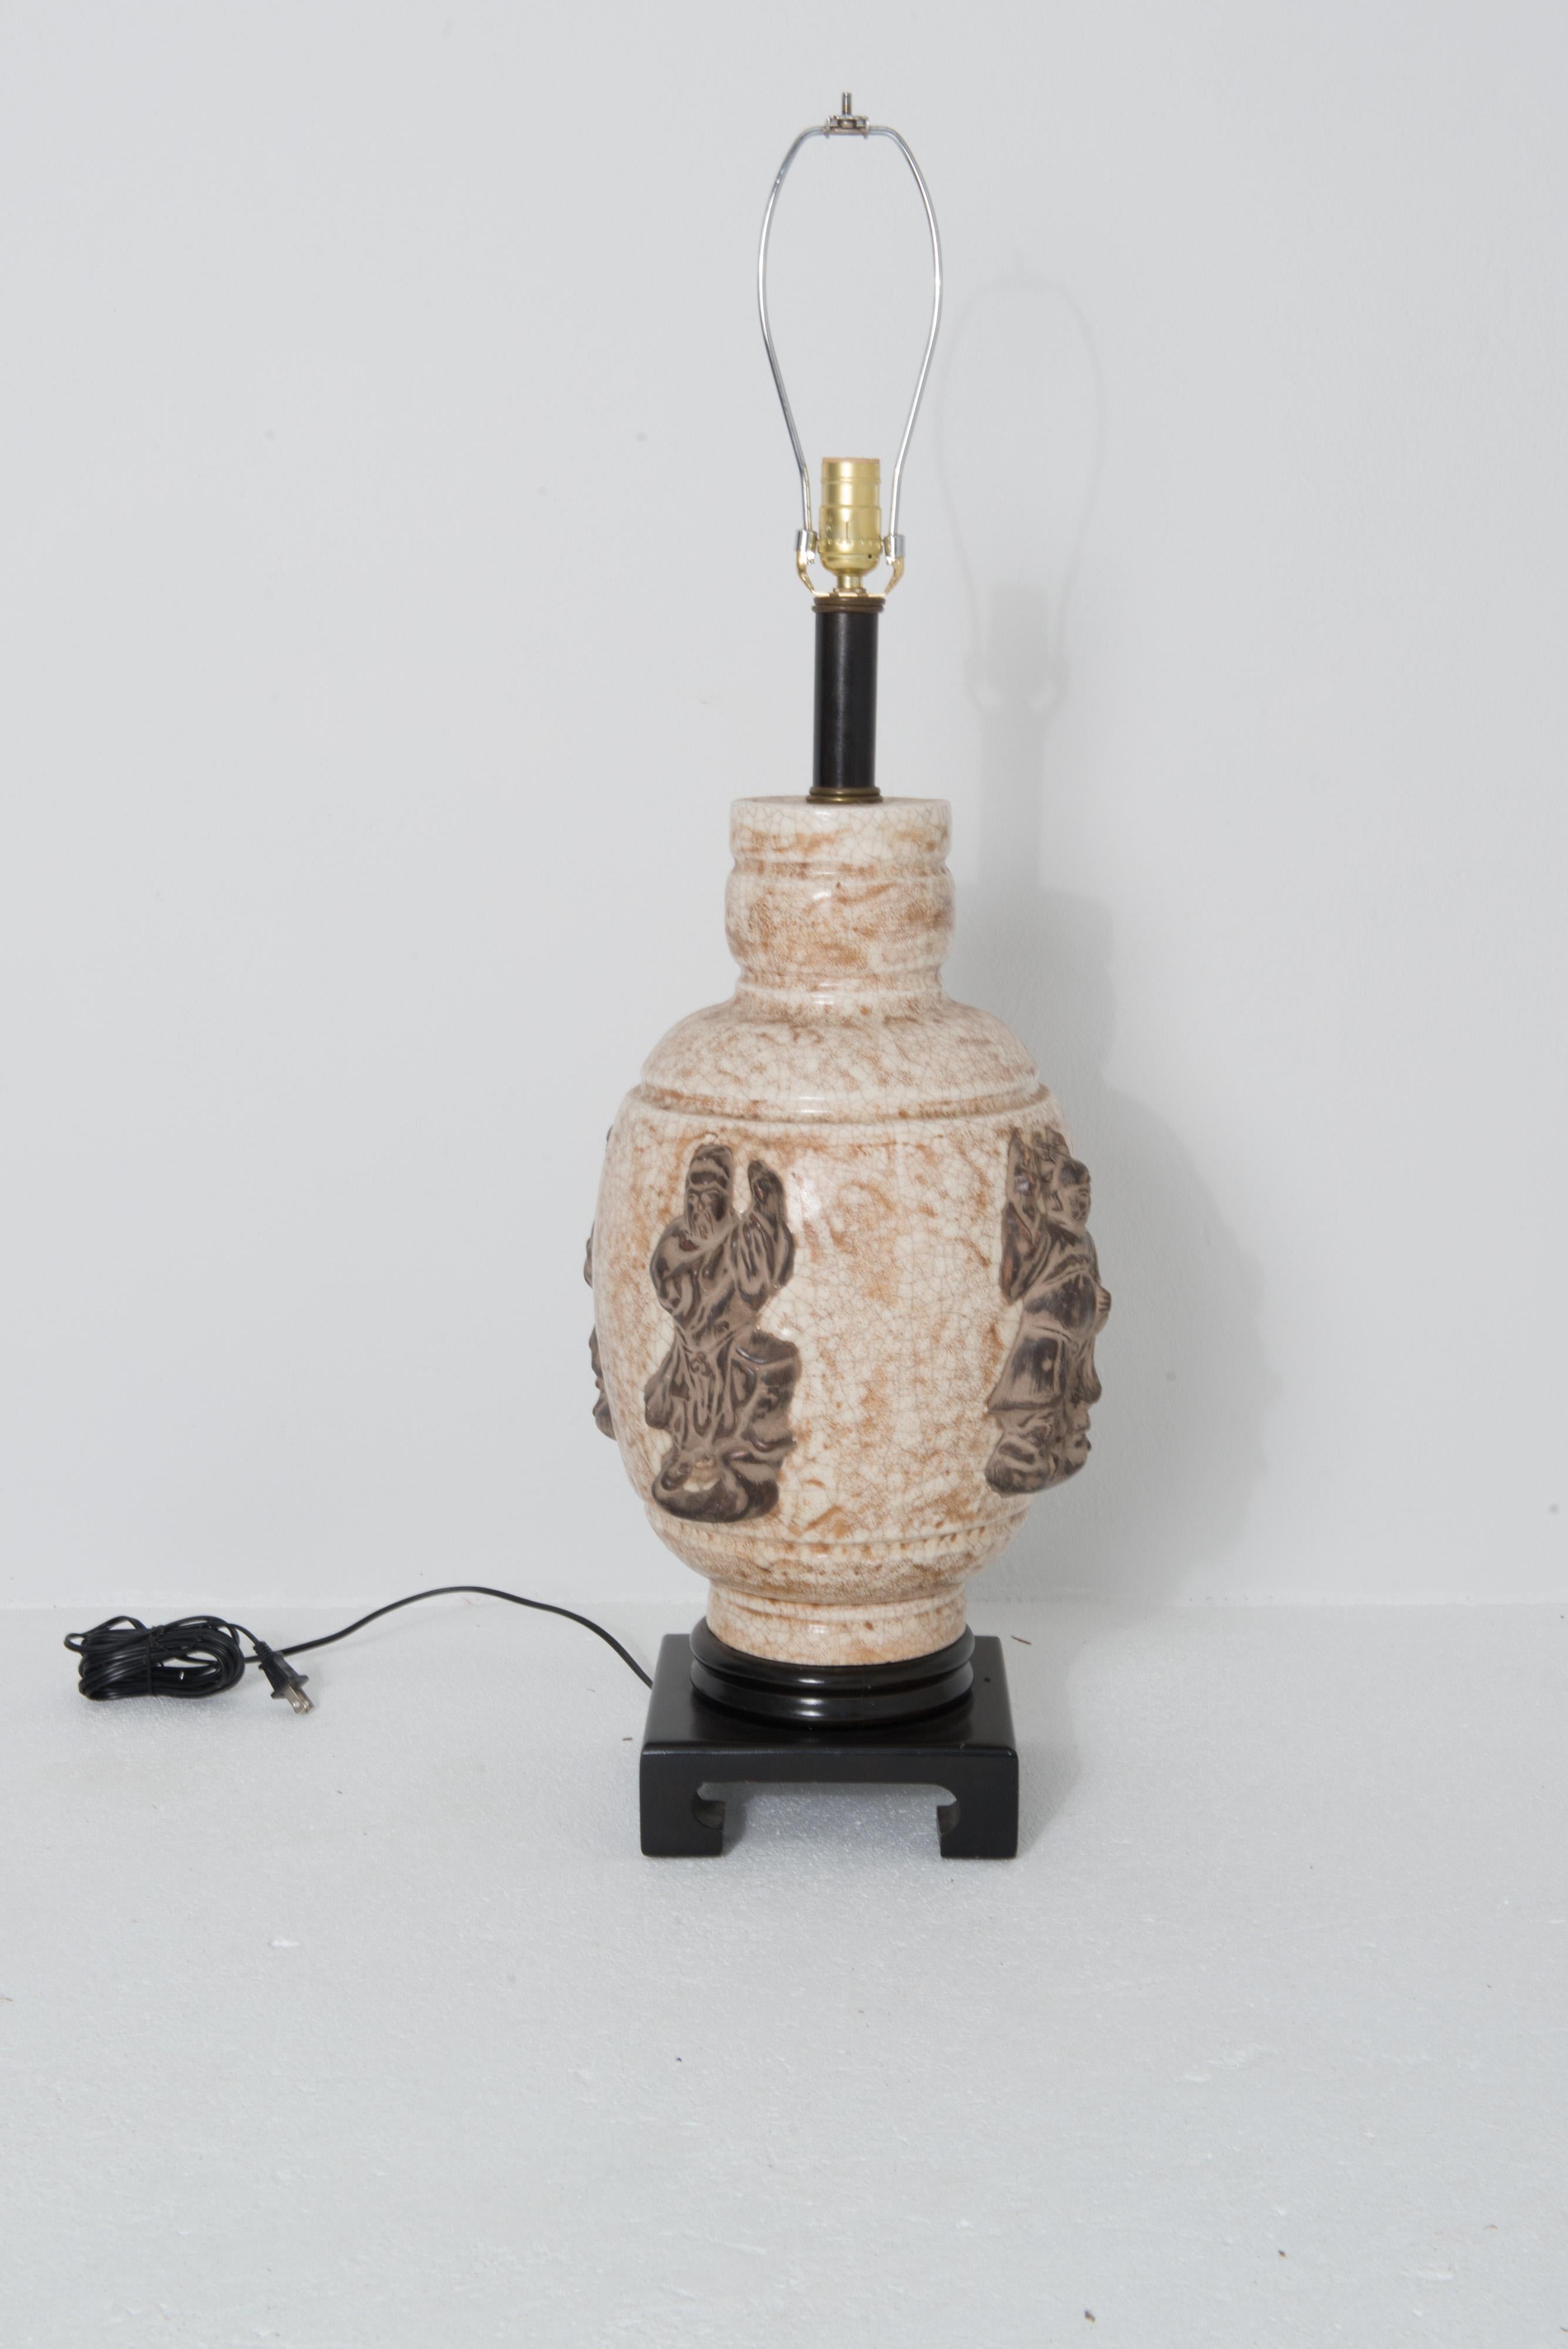 Eine großformatige Keramiklampe im asiatischen Stil in Creme- und Sandtönen, die mit vier großen, hochreliefierten, zweifarbigen braunen Figuren verziert ist. Die geschnitzte Holzbasis ist 8